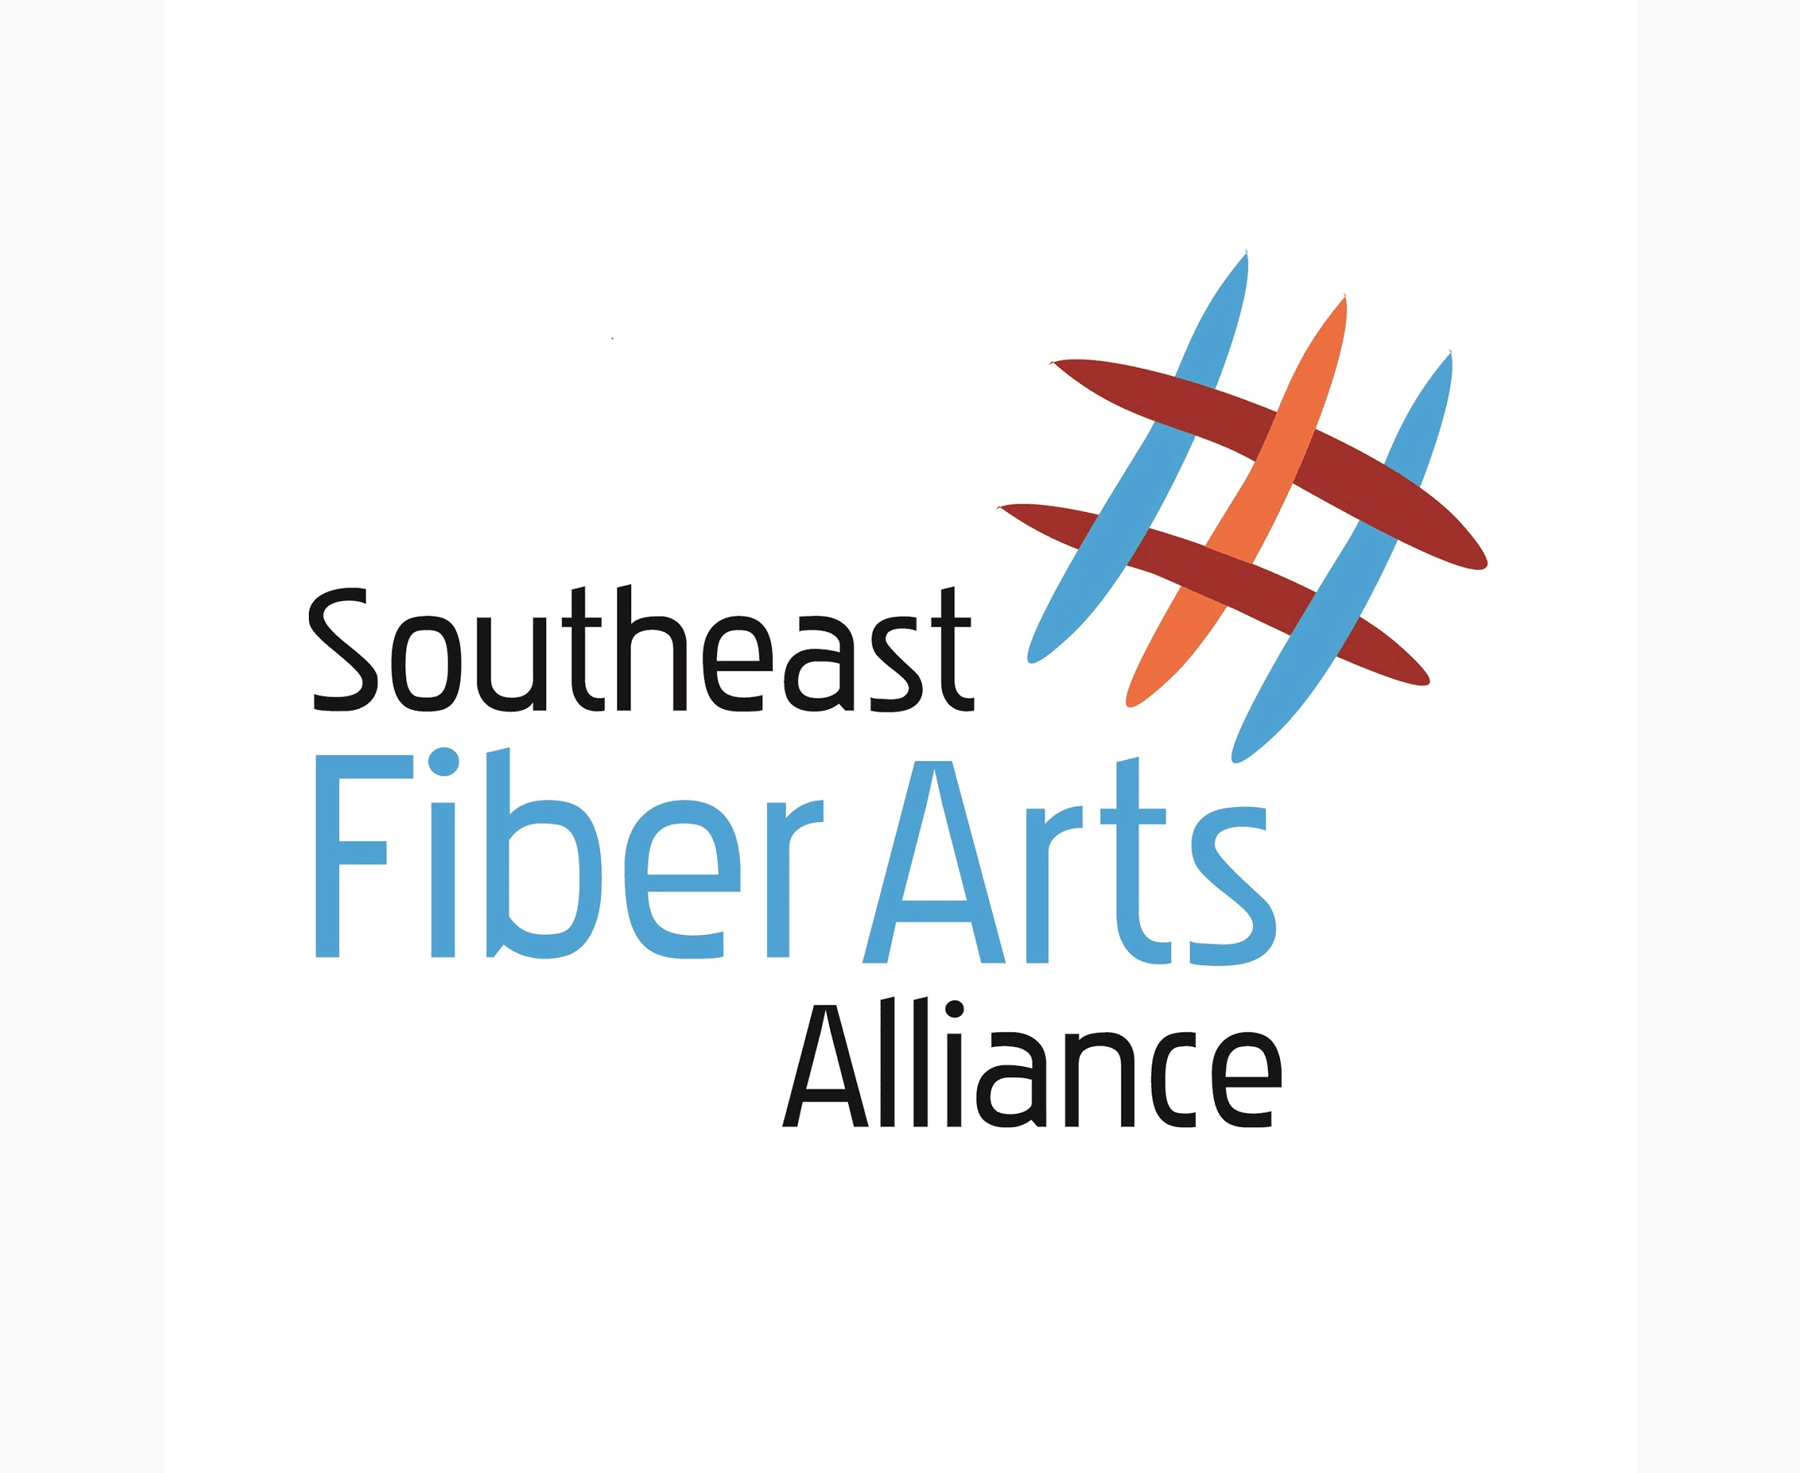 Southeast Fiber Arts Alliance